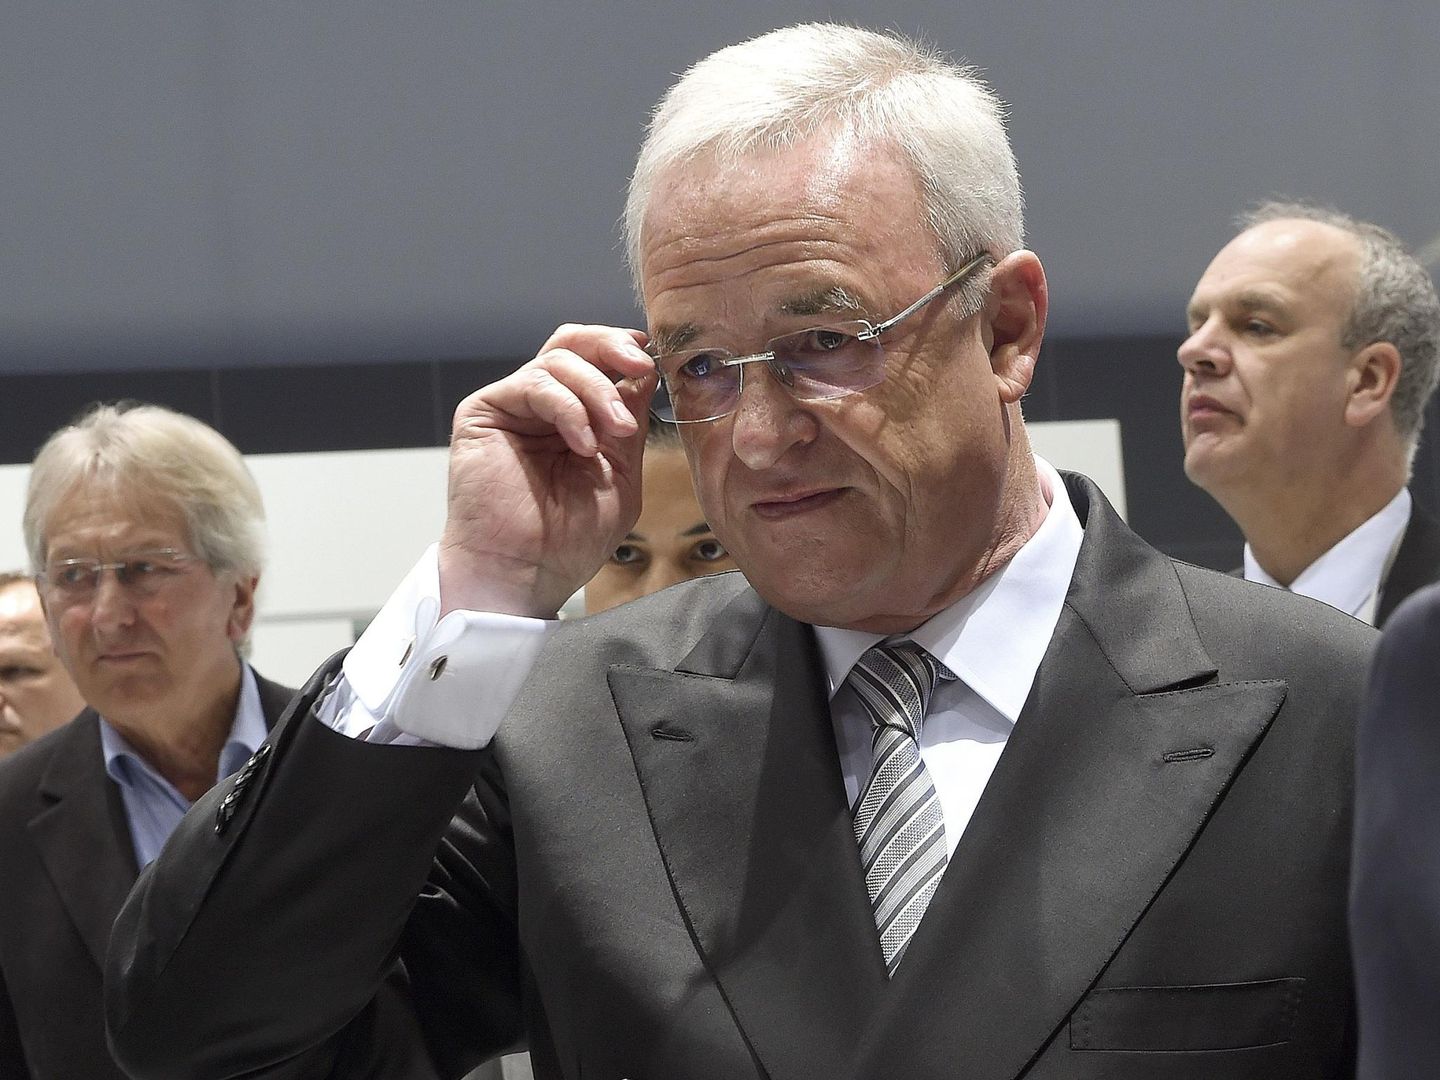 Winterkorn se ajusta las gafas antes del comienzo de la junta en Hannover (Reuters).